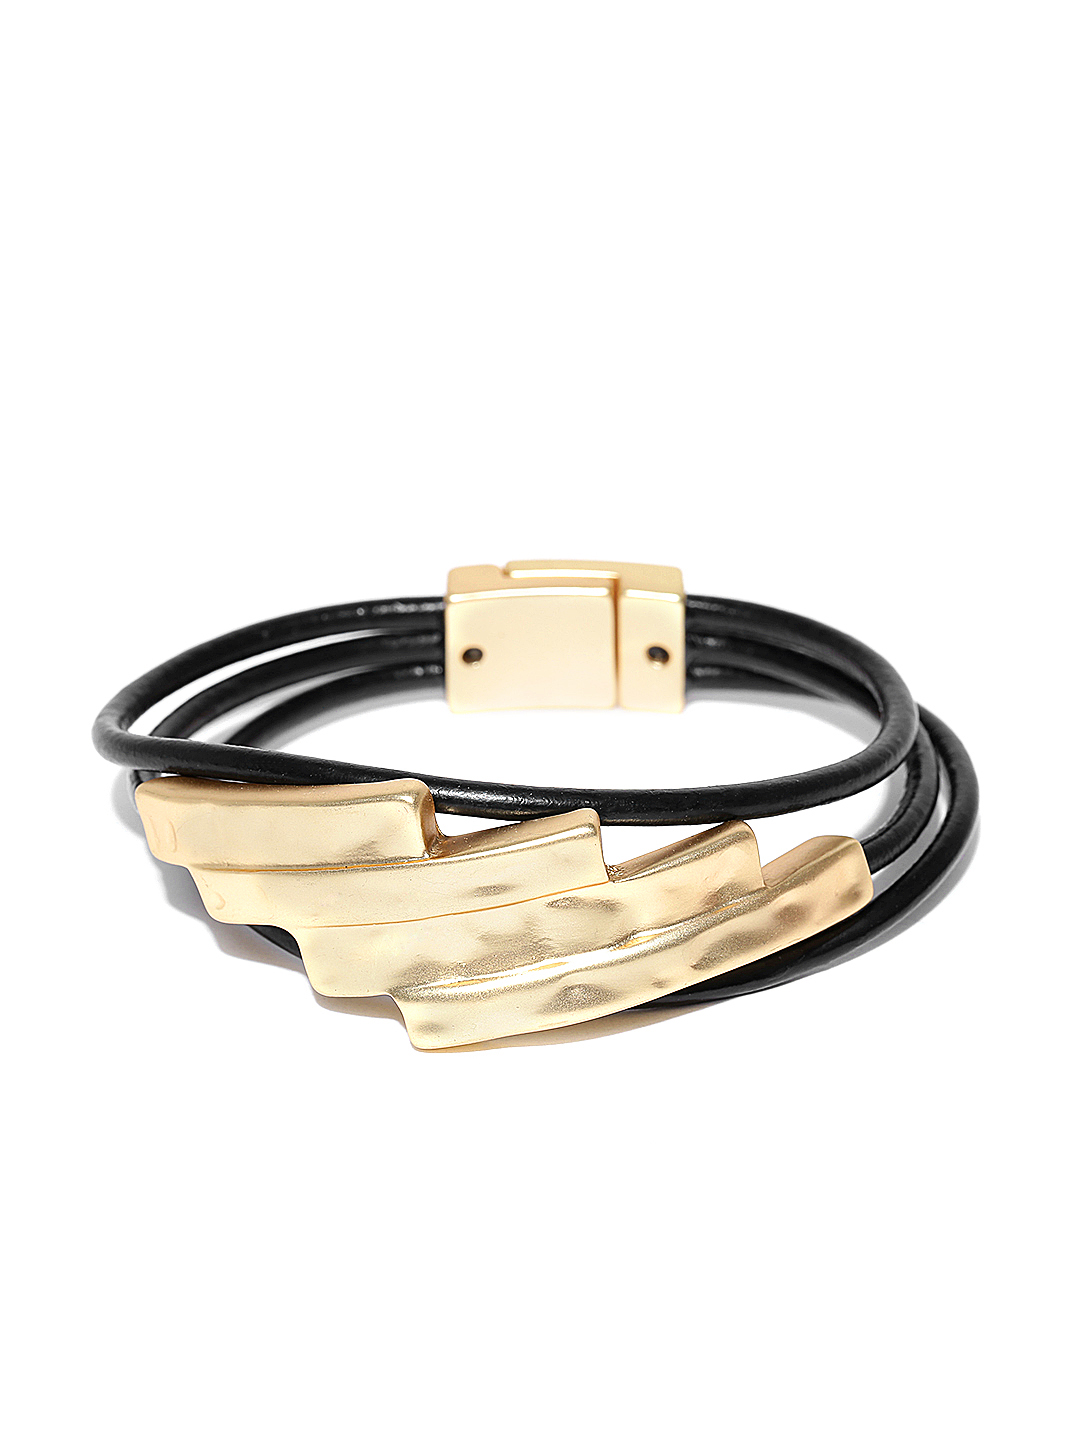 Thingalicious Black & Gold-Toned Leather Bracelet